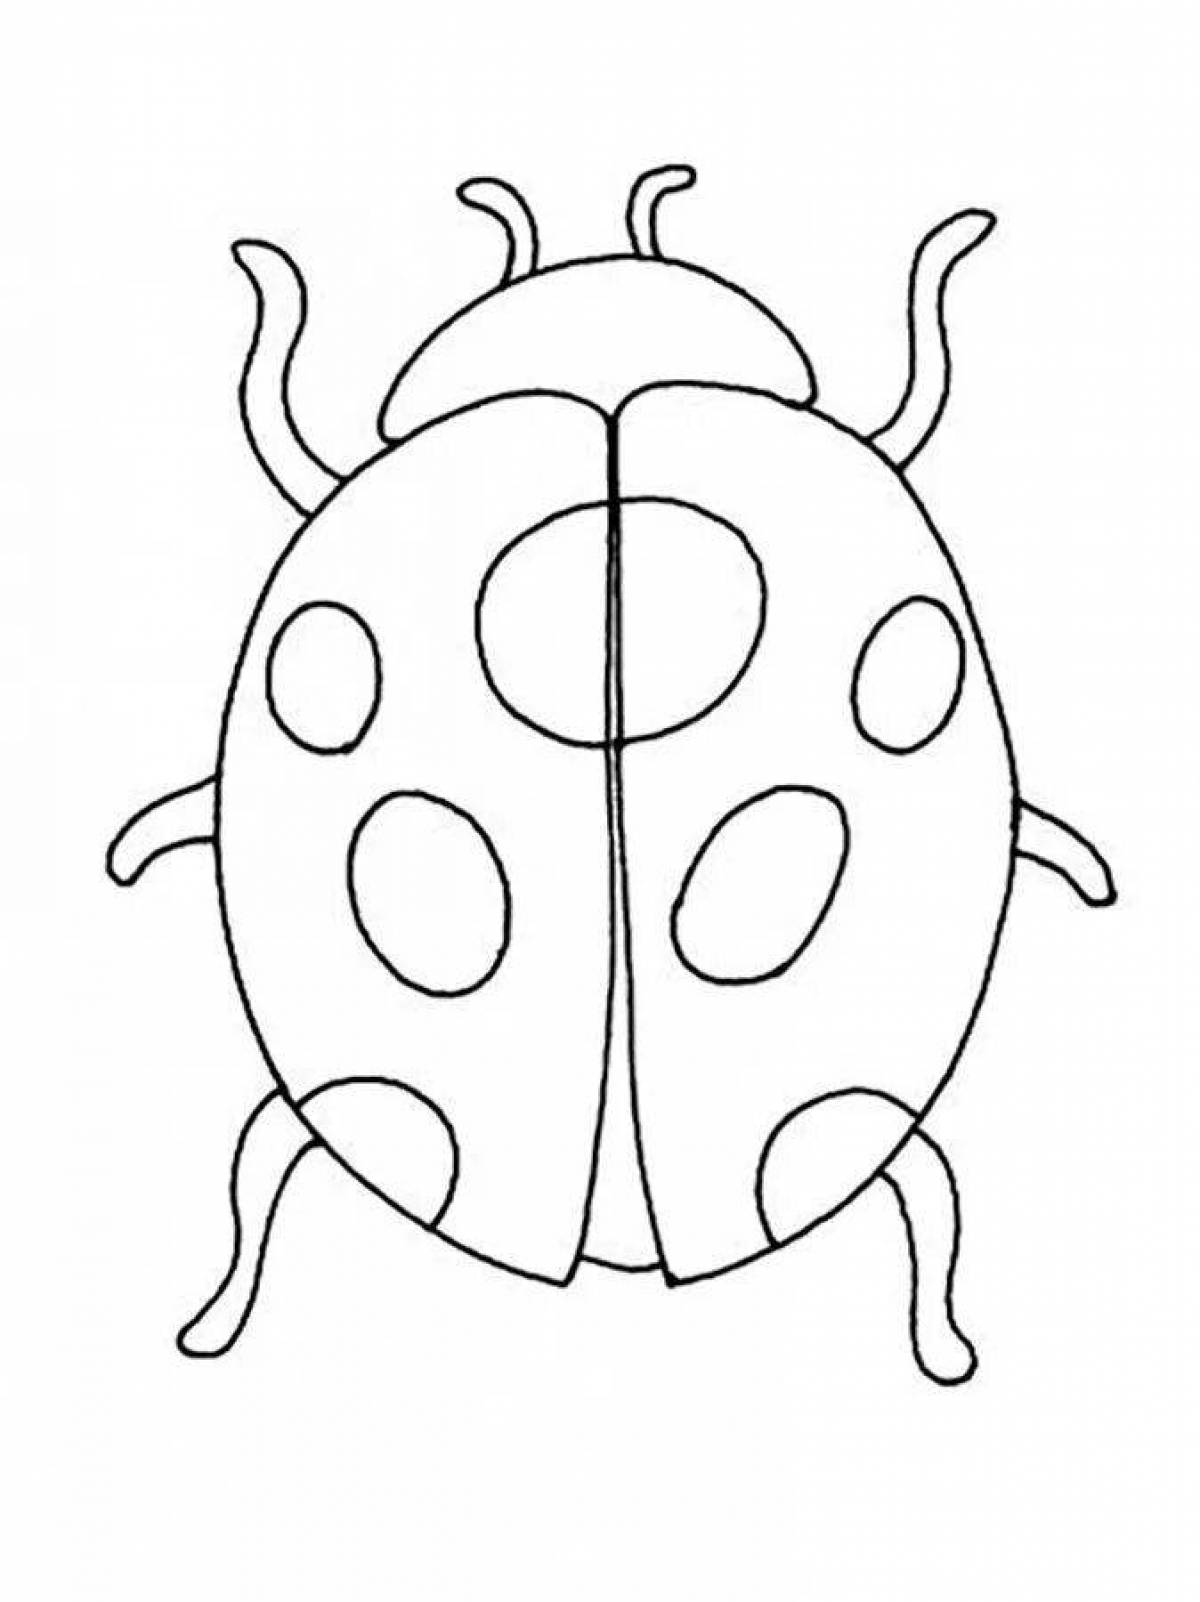 Violent ladybug coloring book for kids